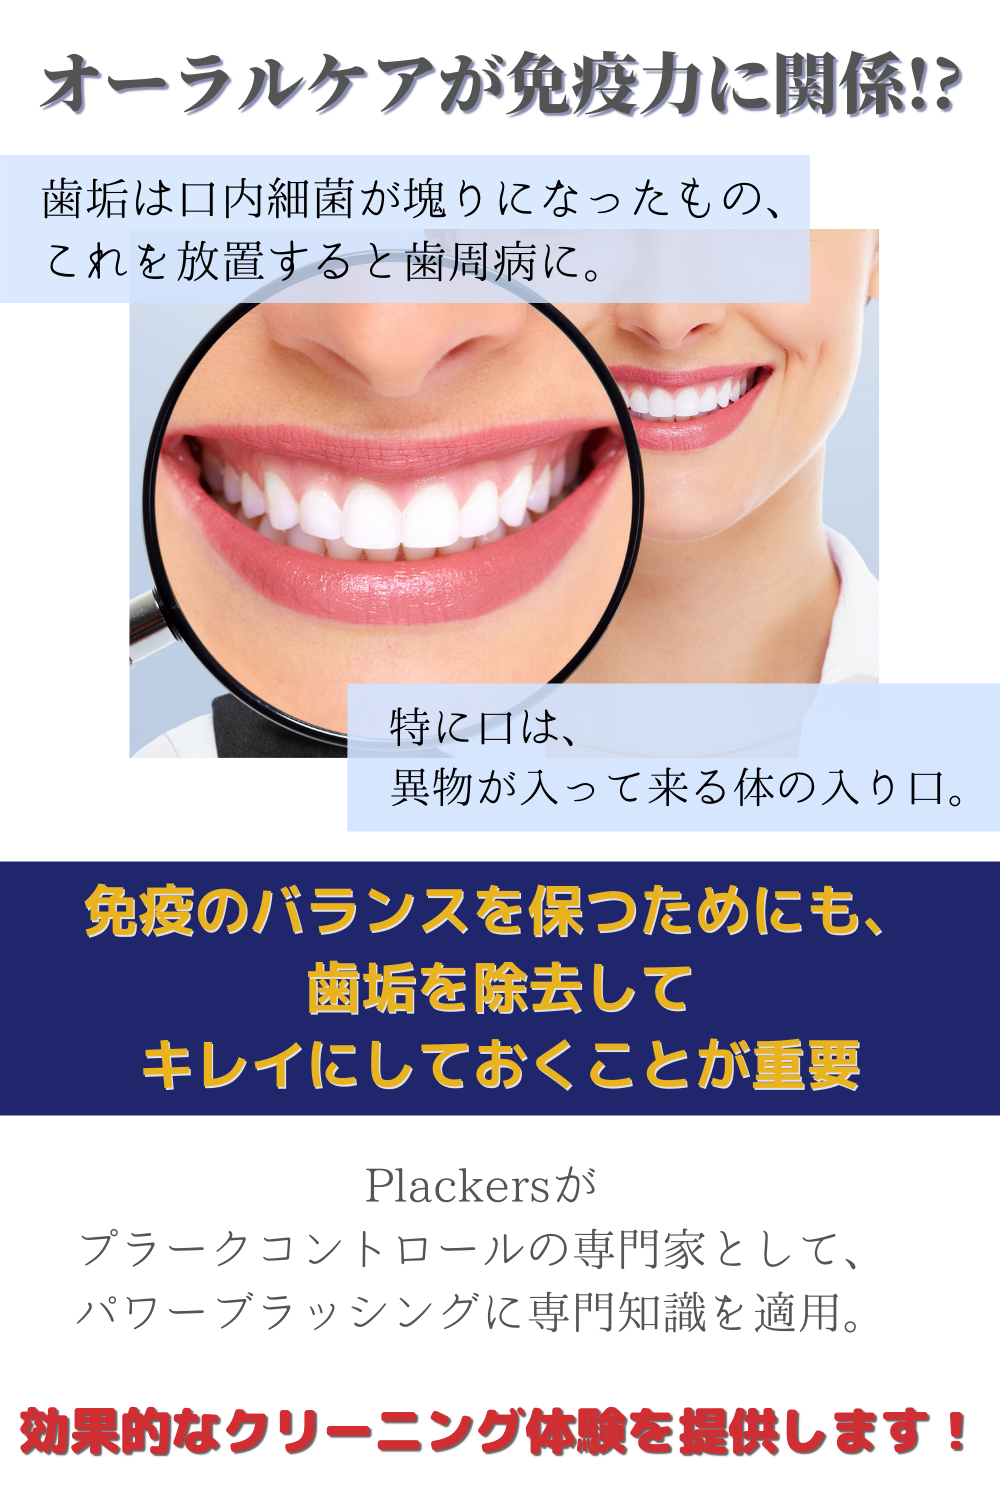 電動歯ブラシ Plackers&SHIROIHA